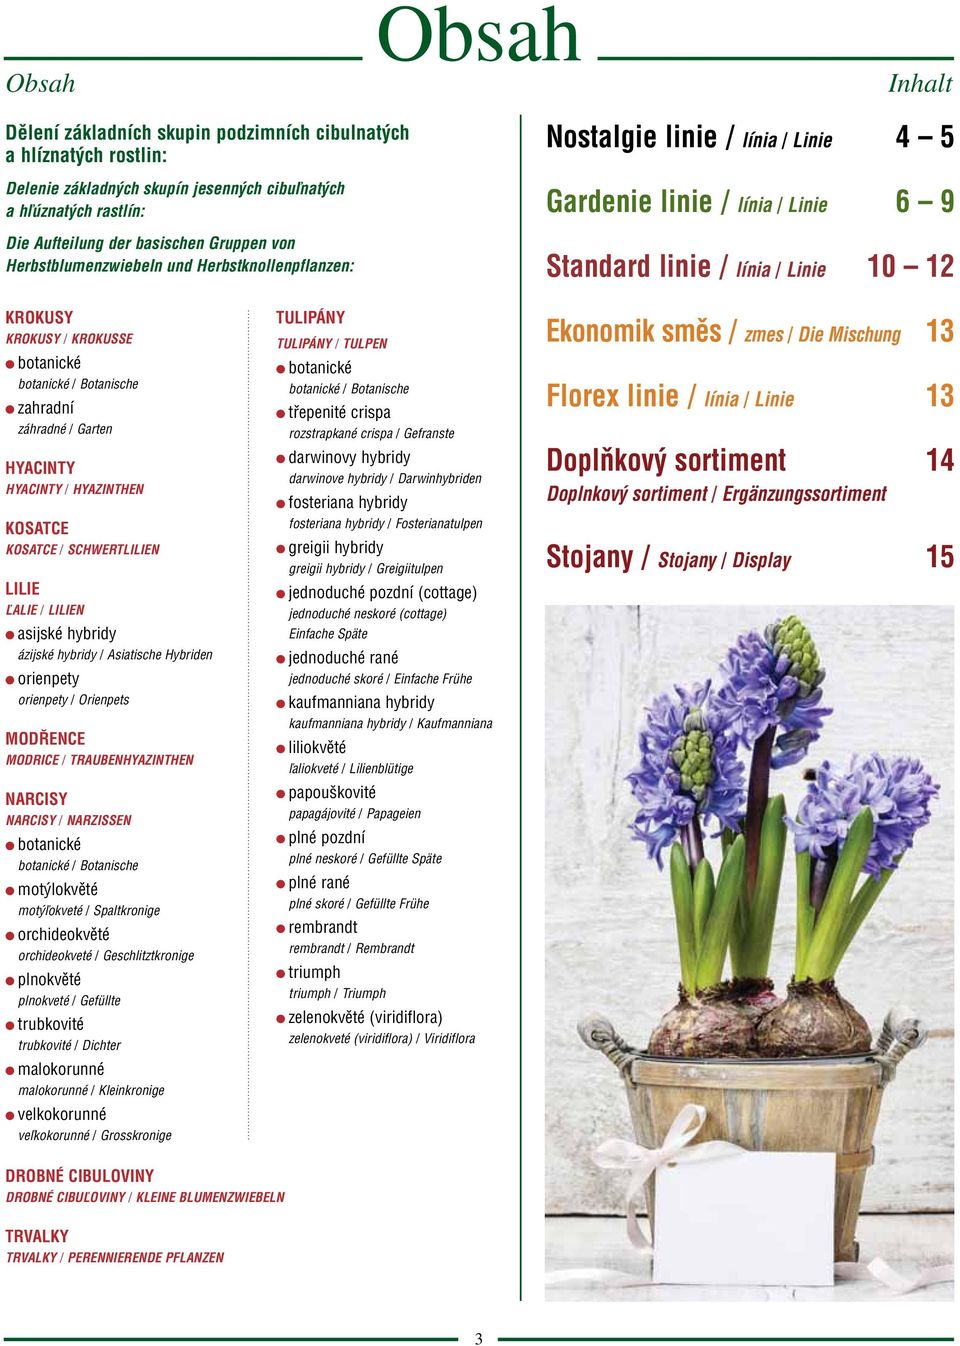 Botanische zahradní záhradné / Garten HYACINTY HYACINTY / HYAZINTHEN KOSATCE KOSATCE / SCHWERTLILIEN LILIE ĽALIE / LILIEN asijské hybridy ázijské hybridy / Asiatische Hybriden orienpety orienpety /